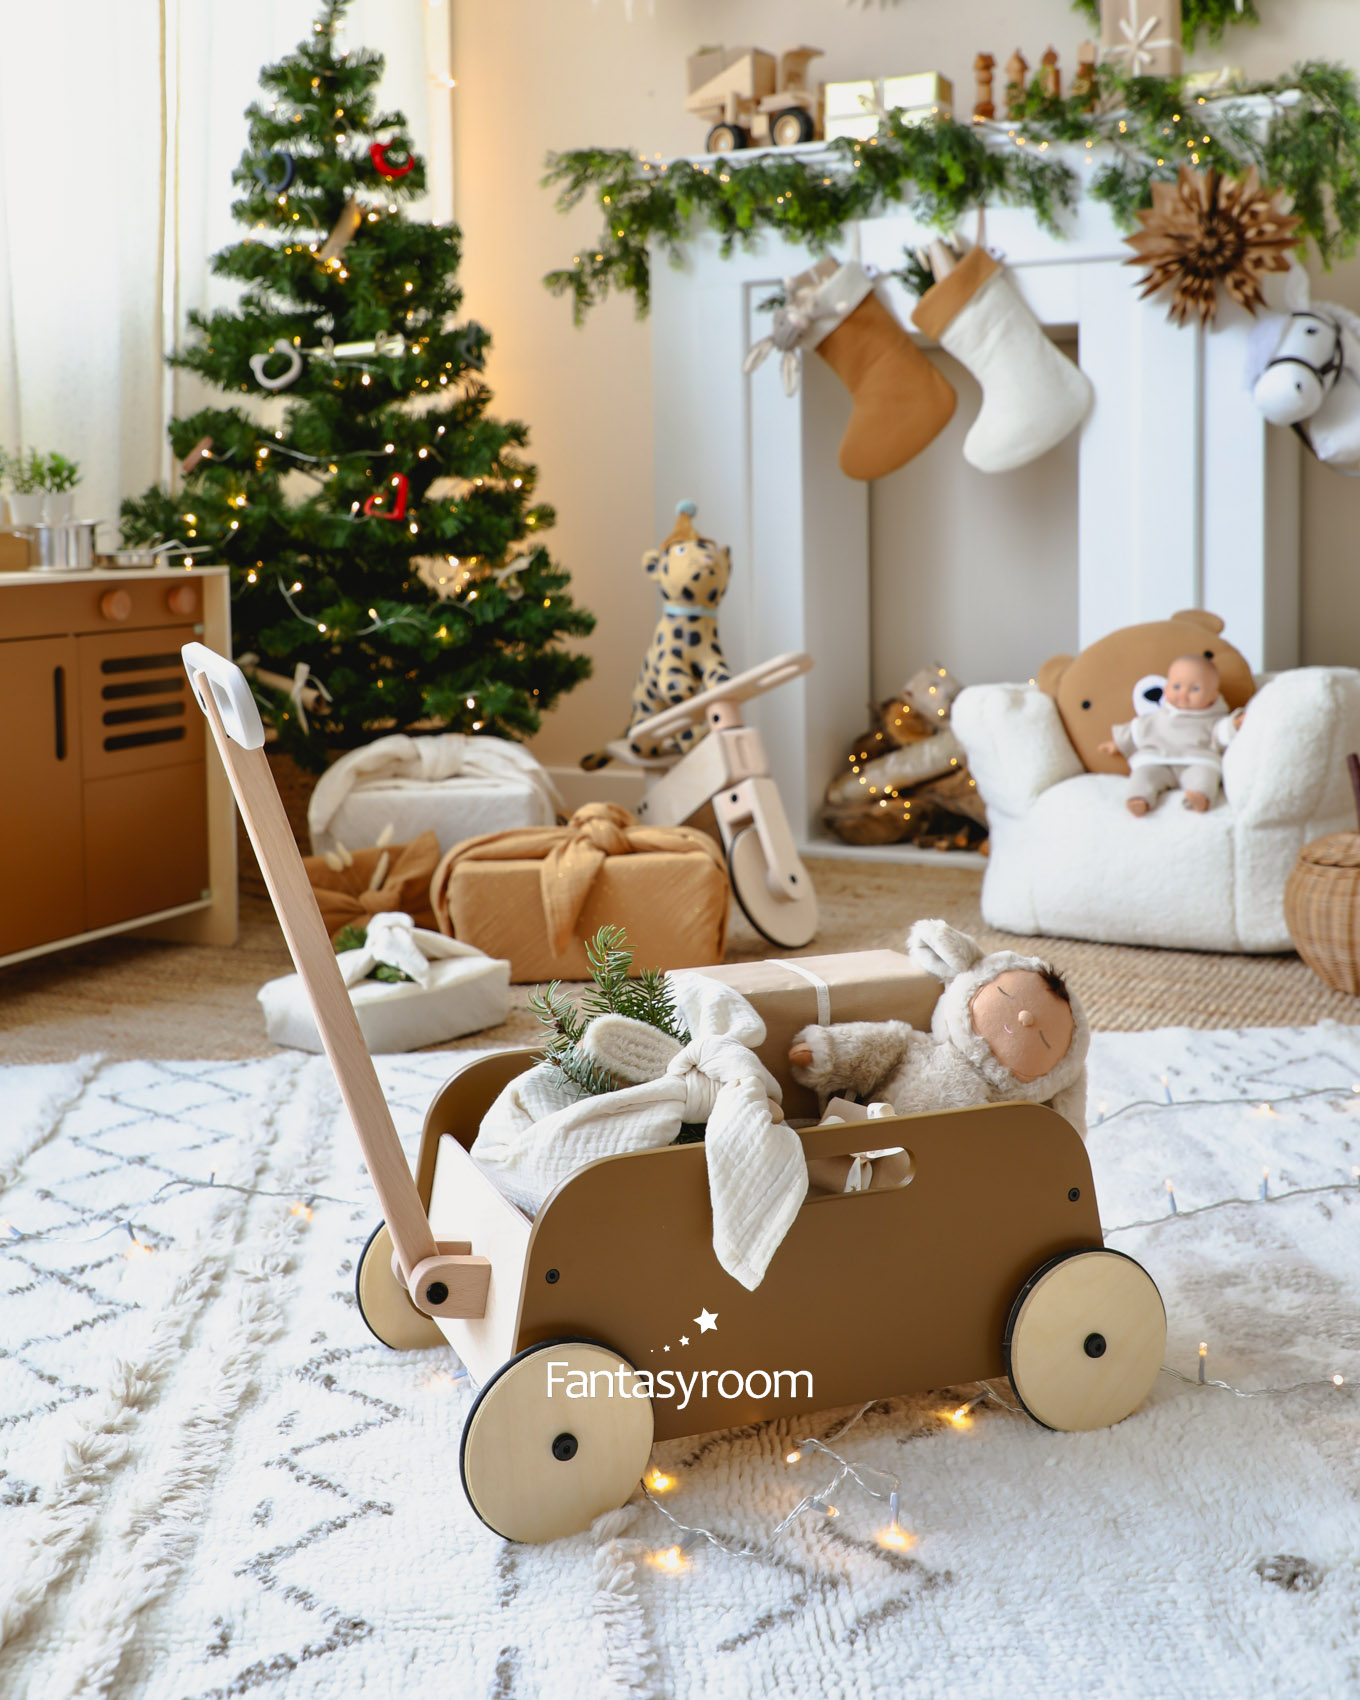 weihnachten-geschenke-fuer-kinder-liewood-fantasyroom-6Z8A0500